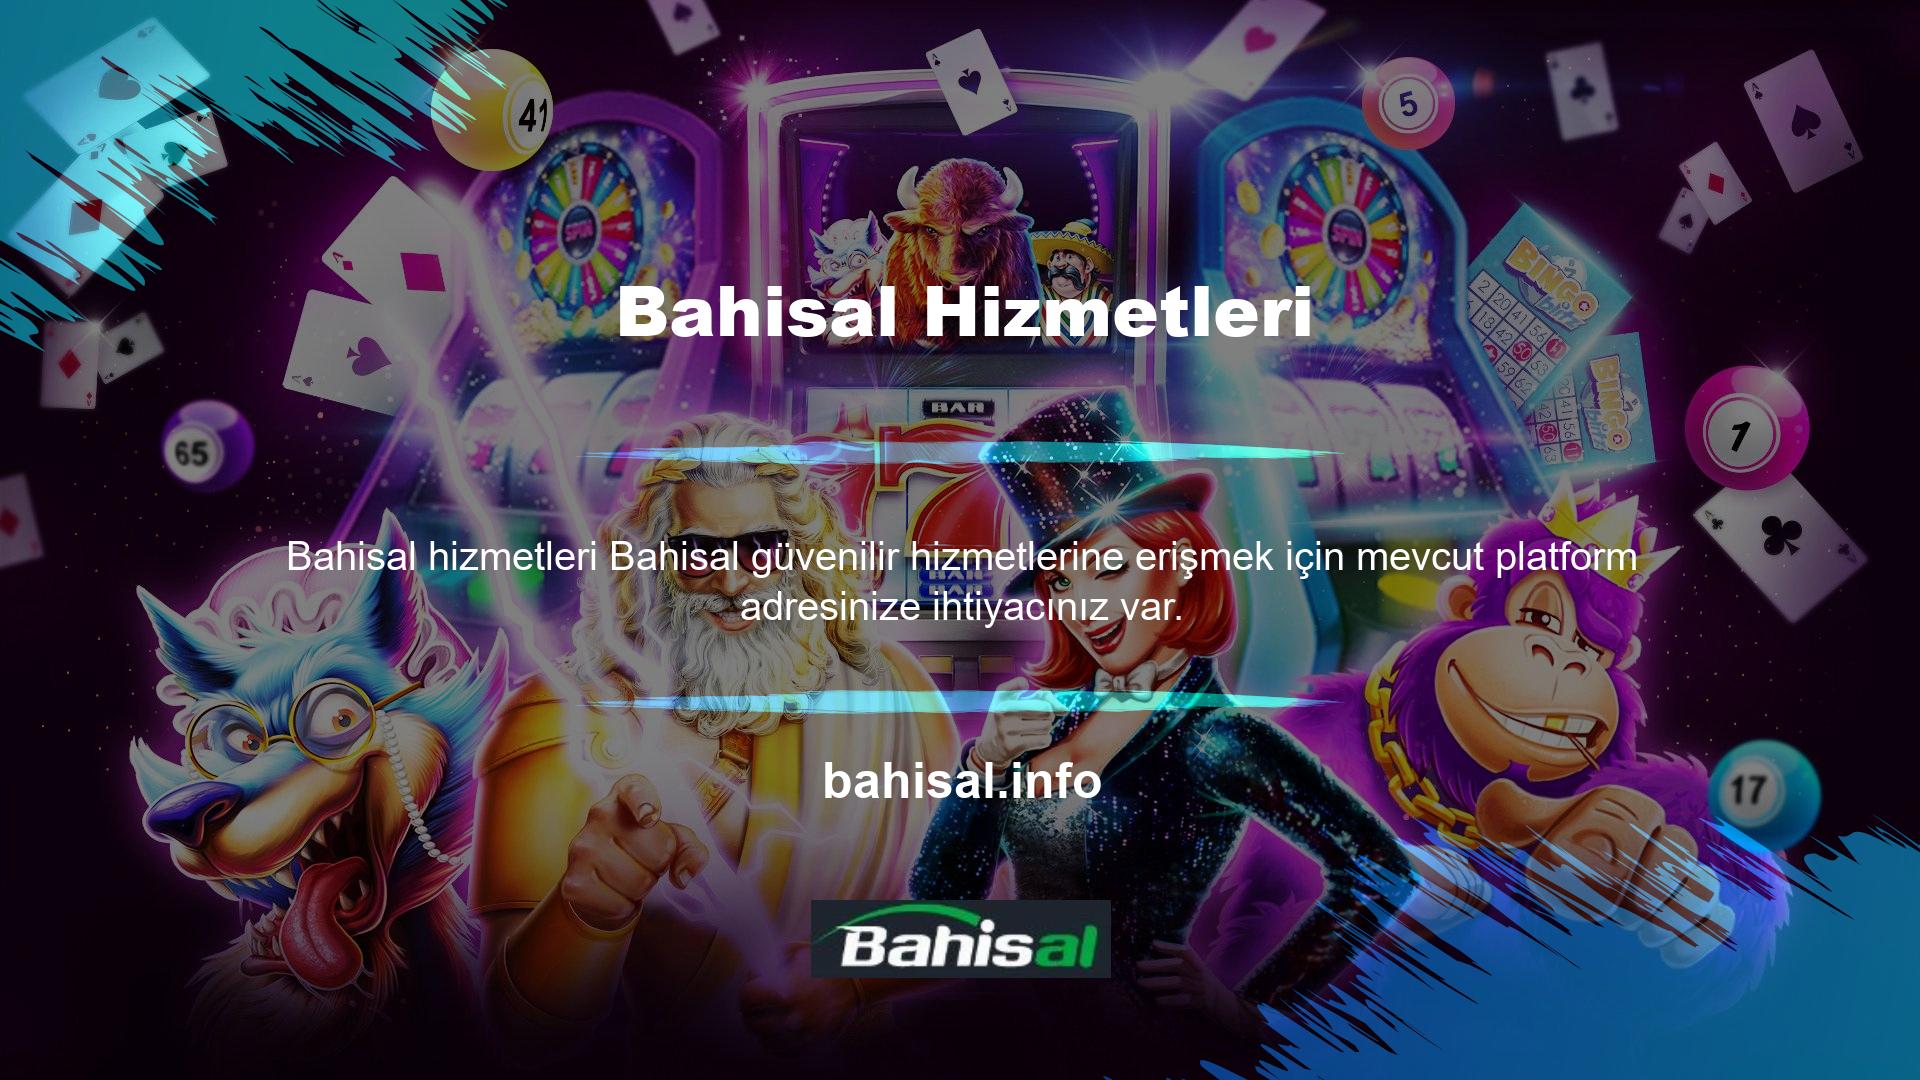 BTK online casino sitesinin engellenmesinin ardından Bahisal yeni giriş adresi gündem oldu